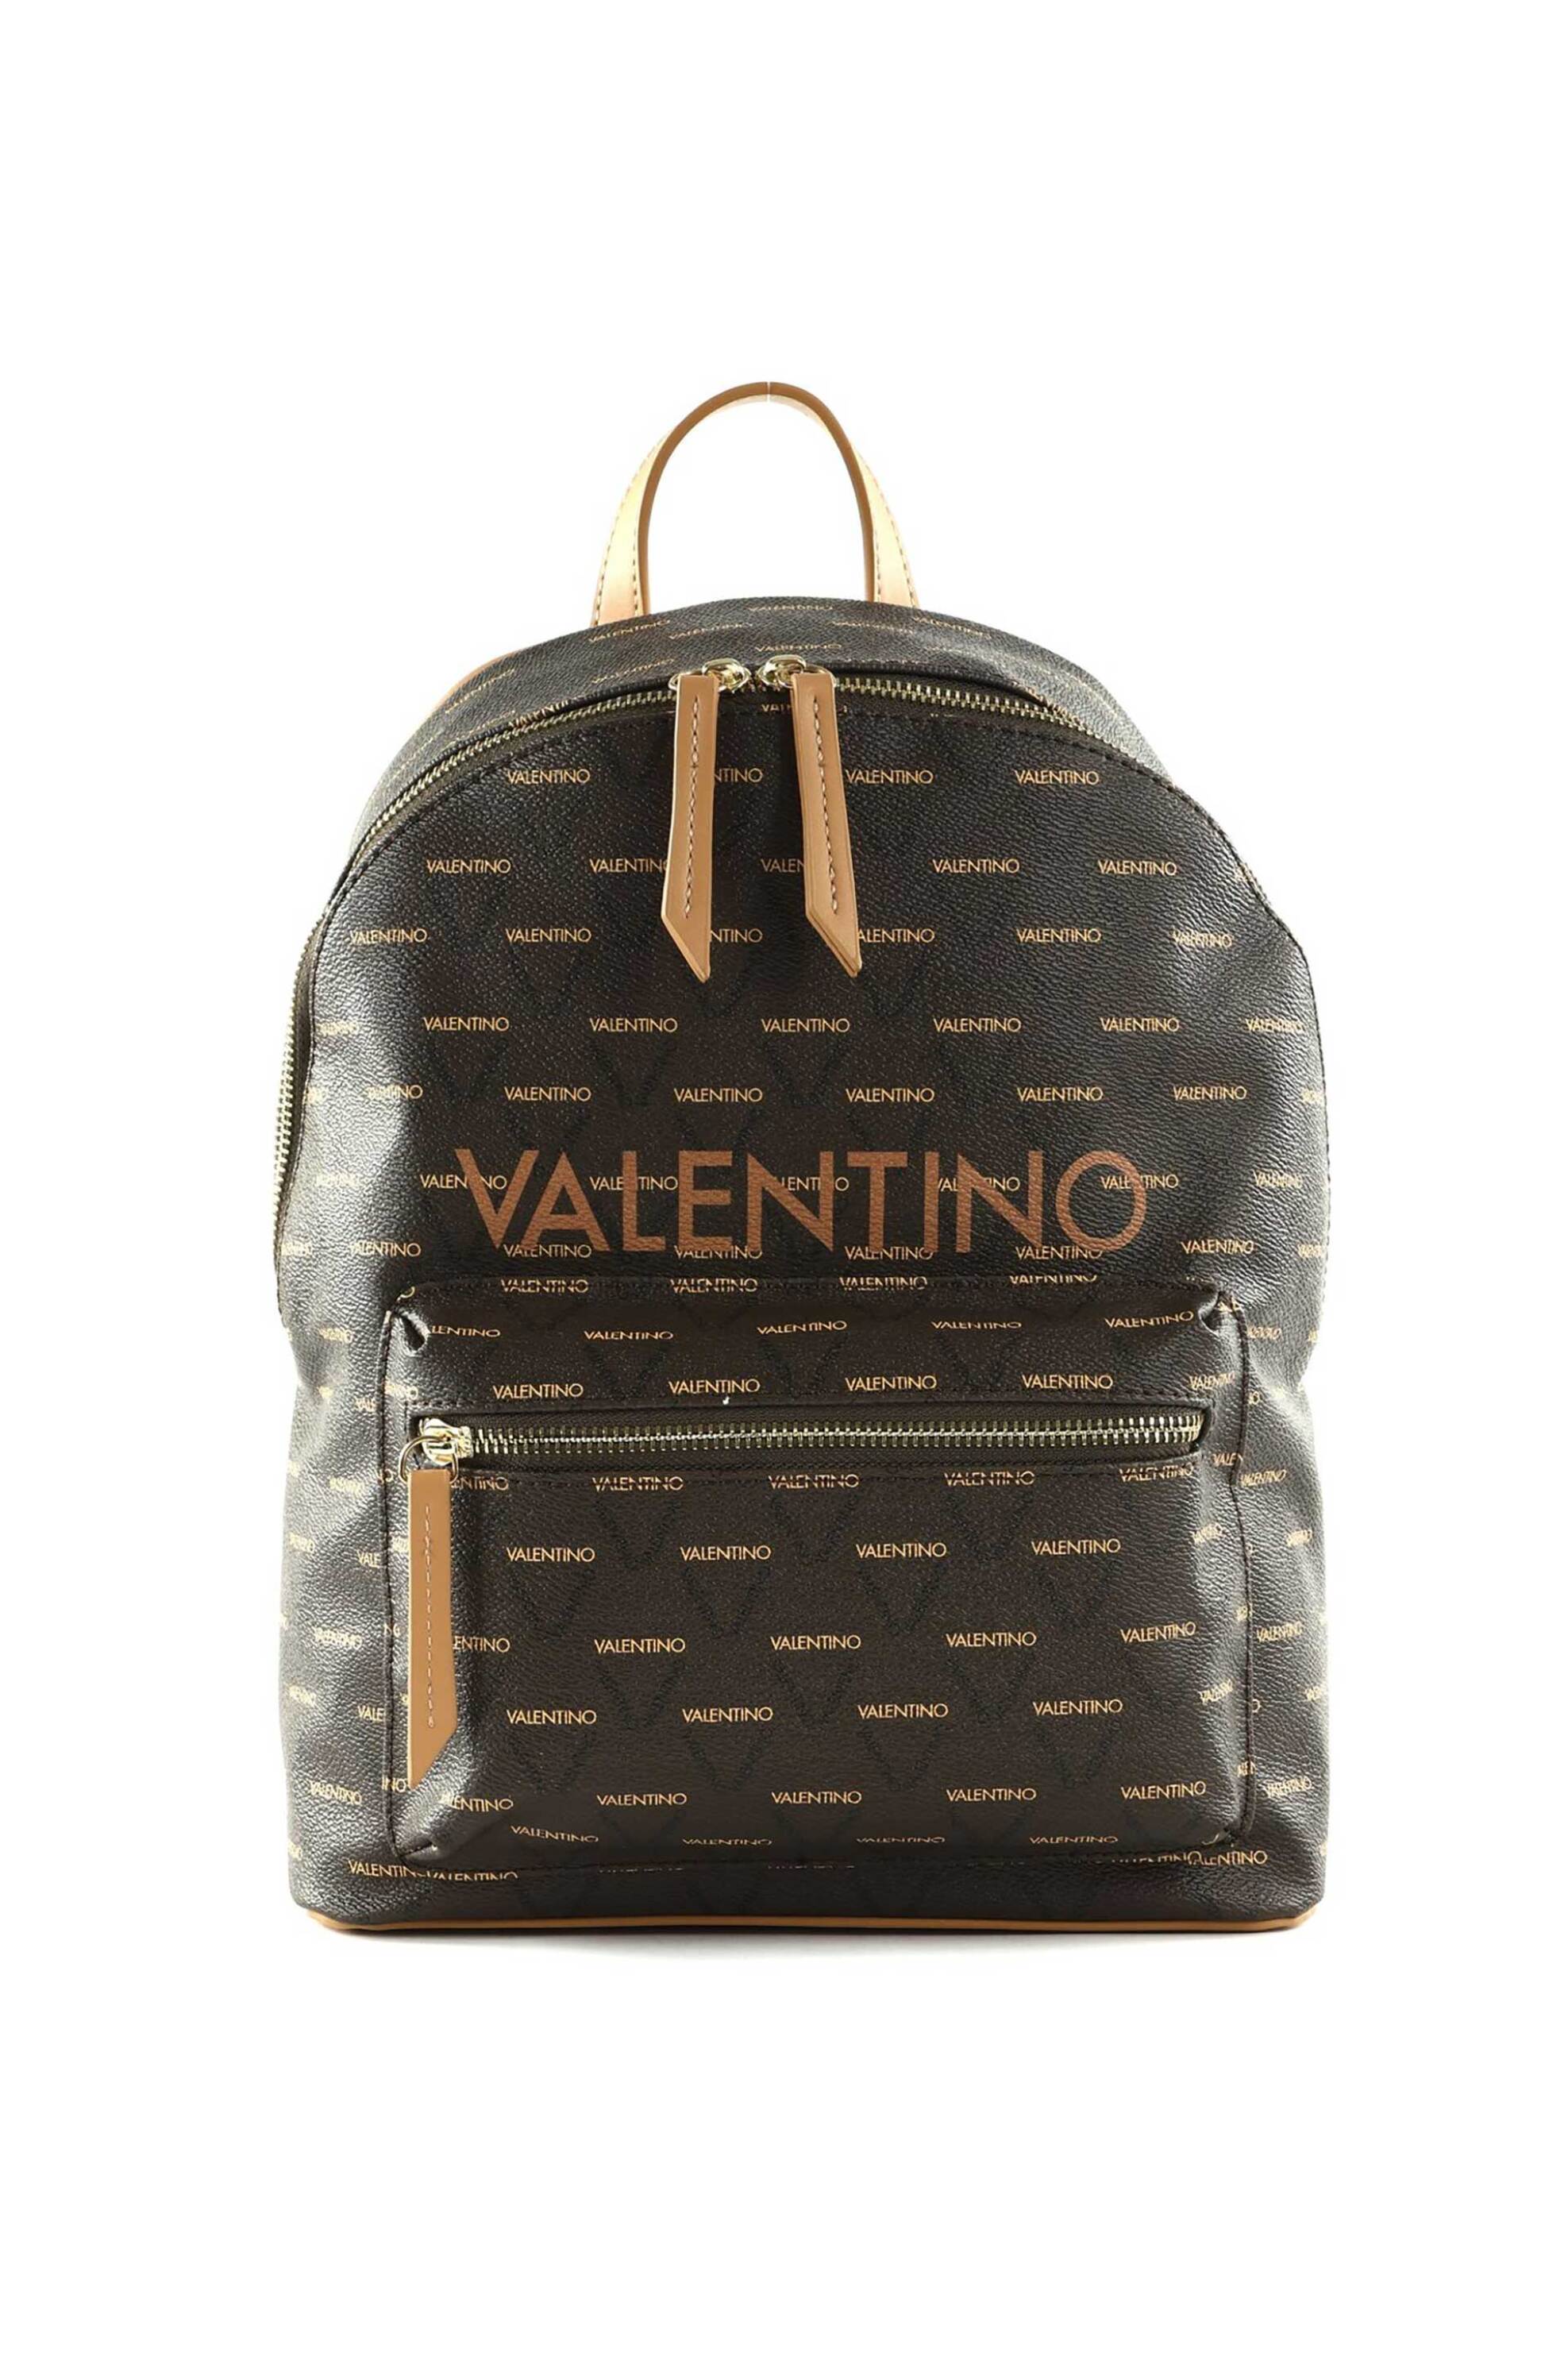 Γυναικεία Ρούχα & Αξεσουάρ > Γυναικείες Τσάντες > Γυναικεία Σακίδια & Backpacks Valentino γυναικείο backpack με all-over triangular logo print "Liuto" - 55KVBS3KG16R/LI Καφέ